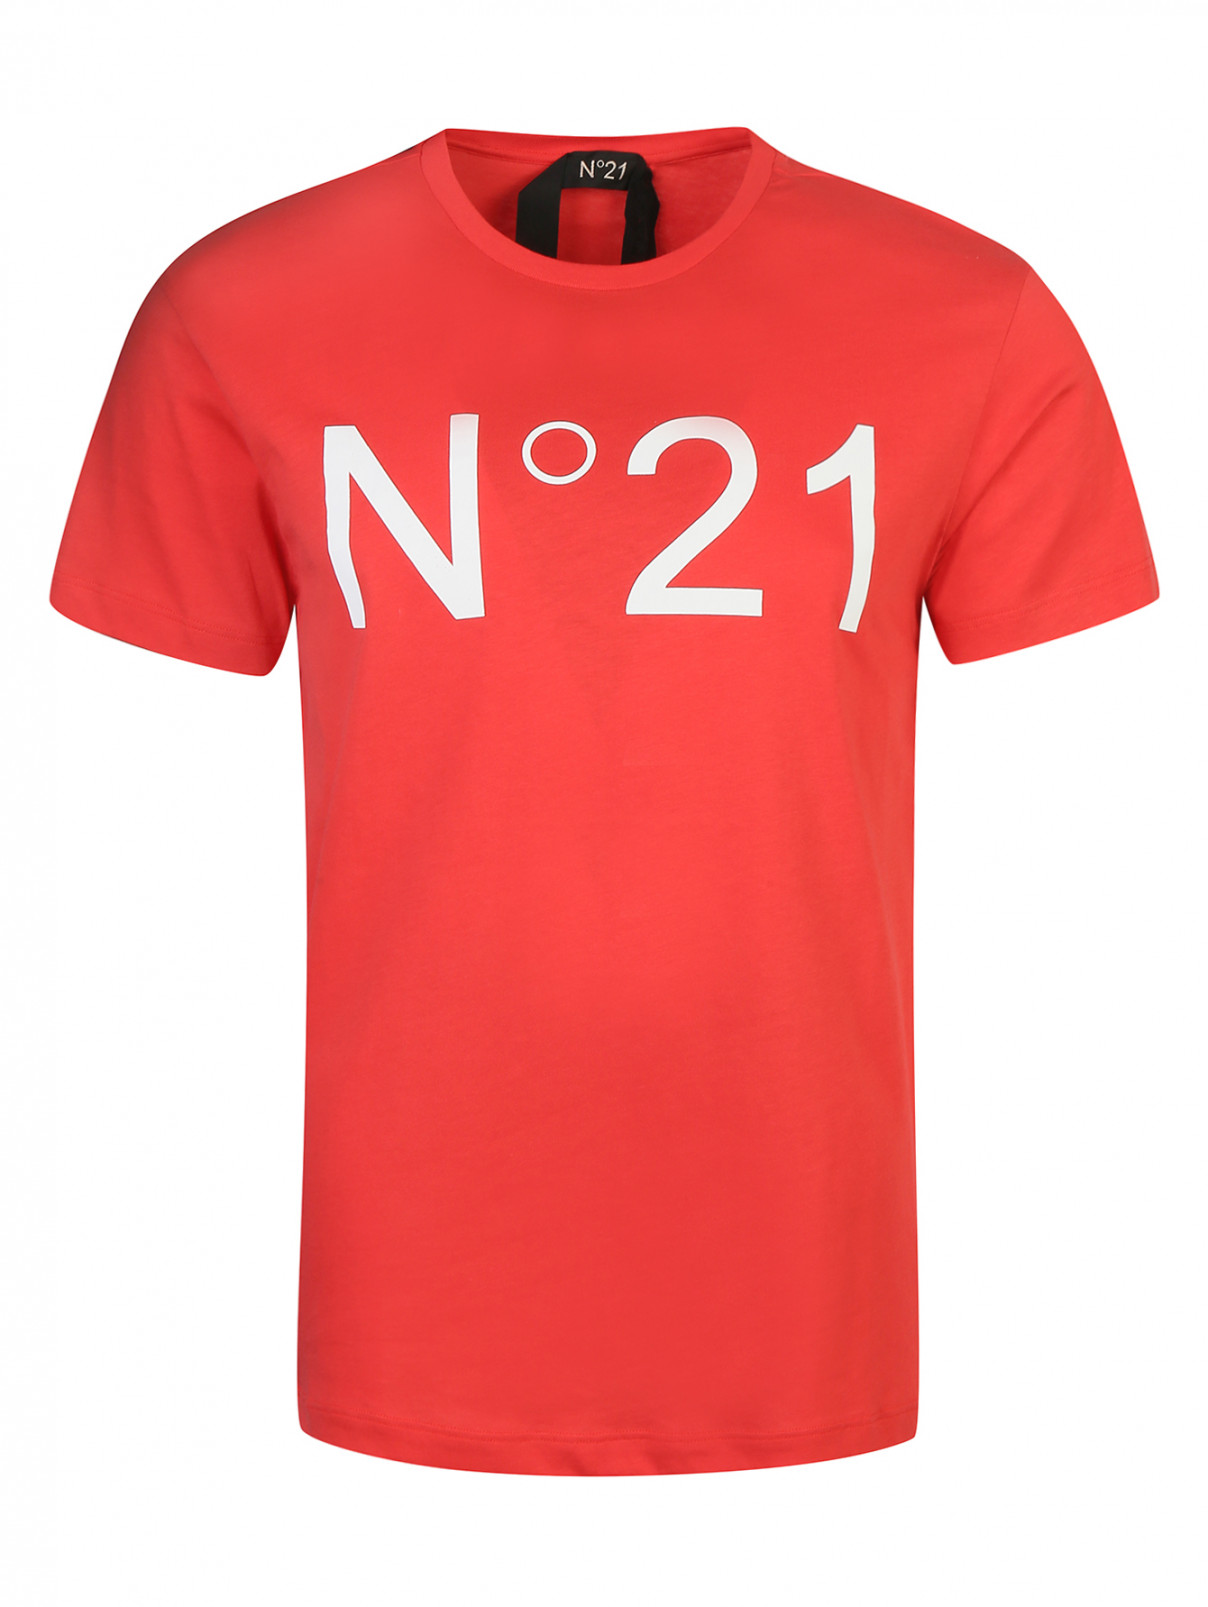 Футболка из хлопка N21  –  Общий вид  – Цвет:  Красный